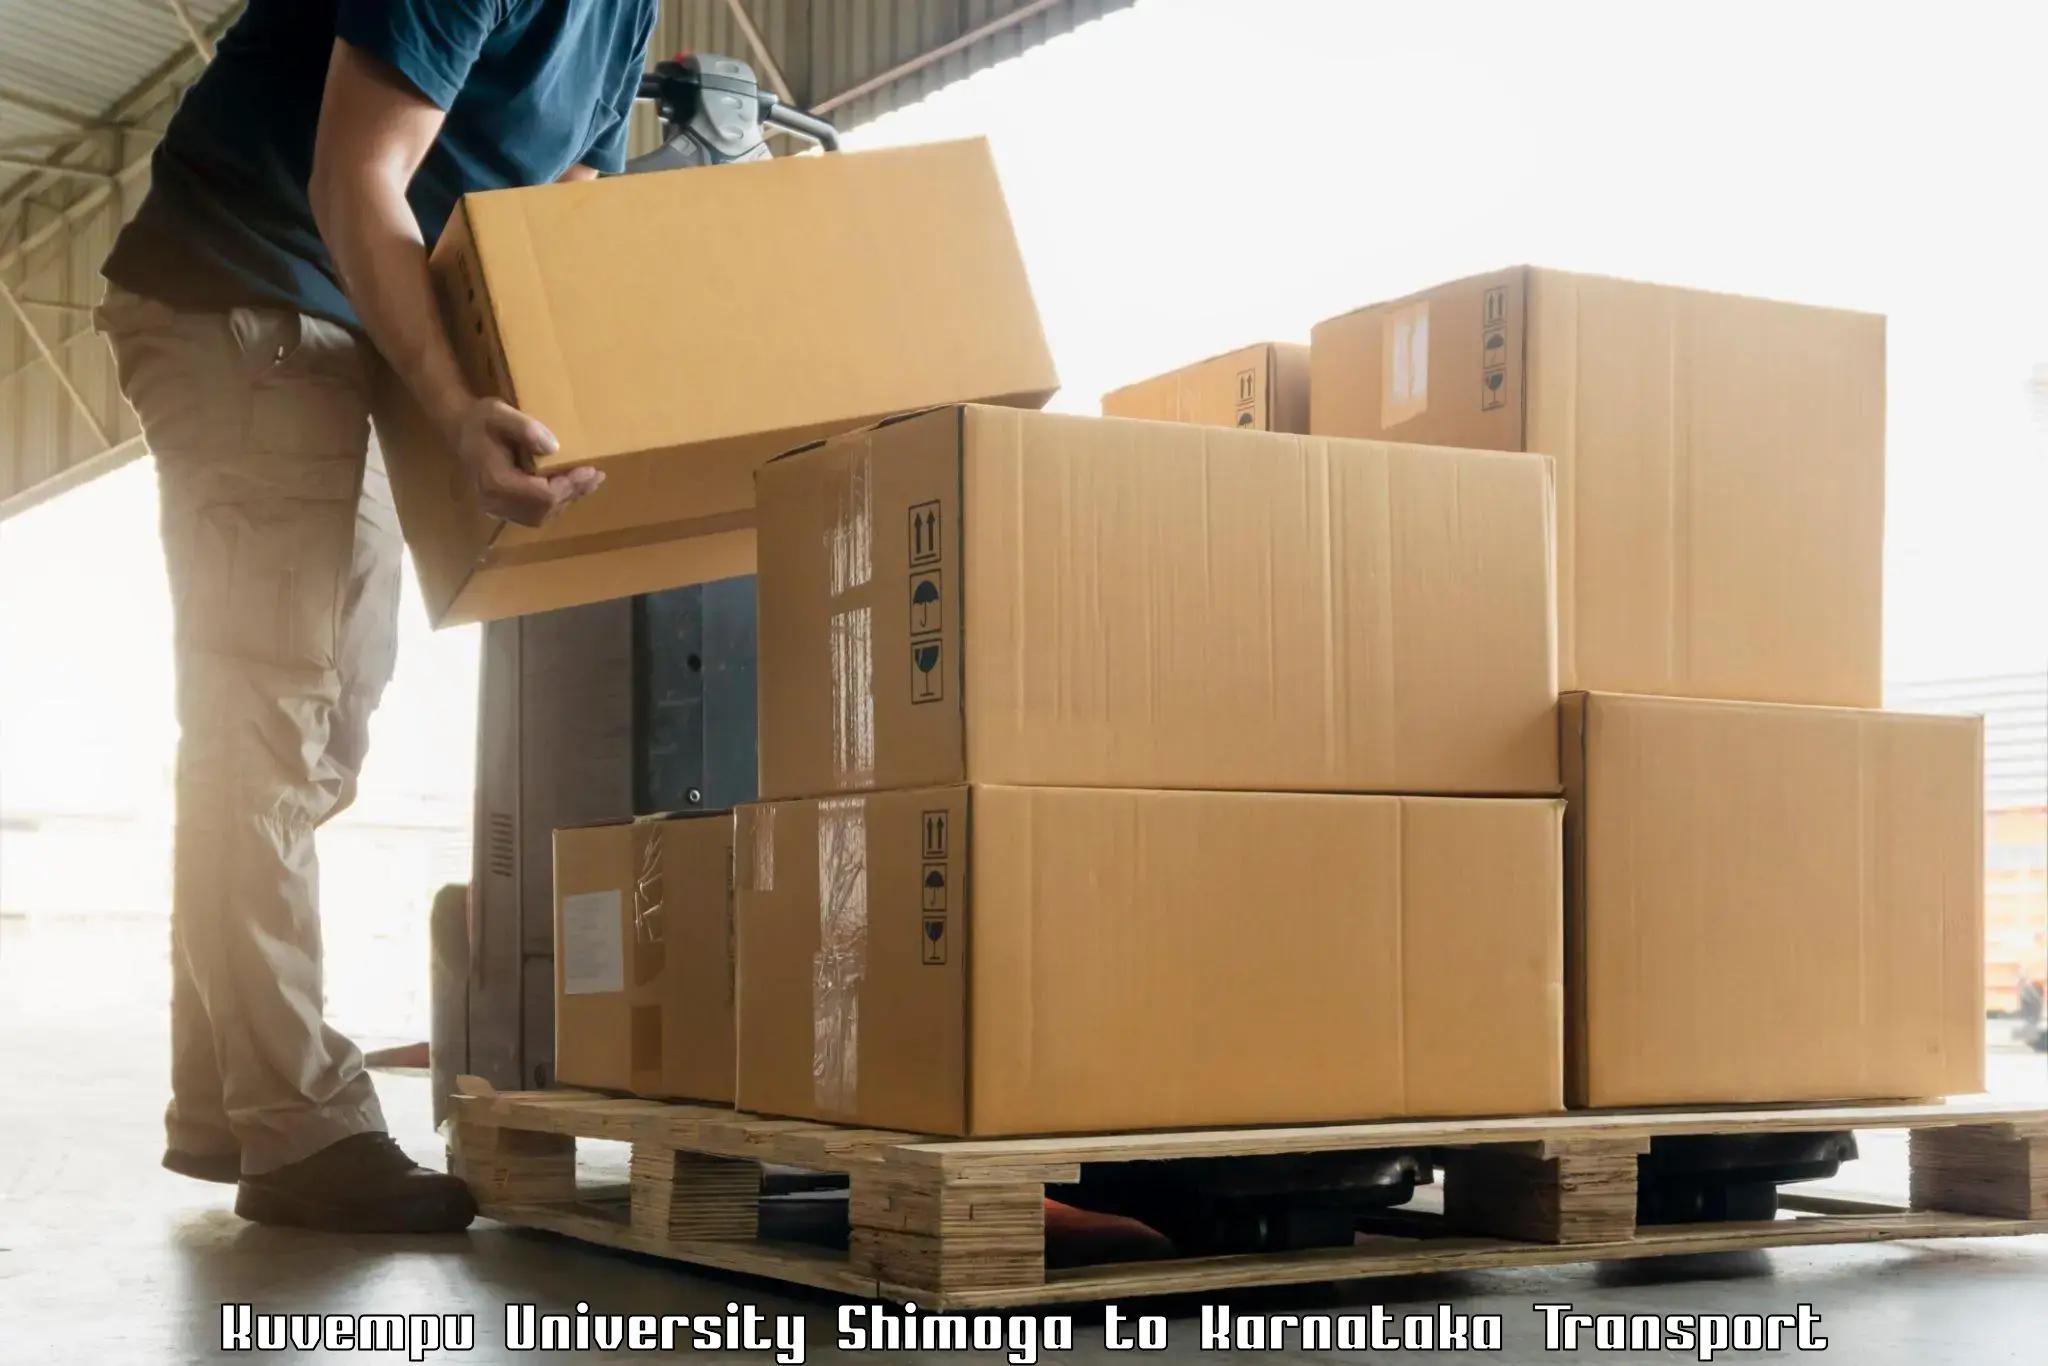 Vehicle courier services Kuvempu University Shimoga to Uttara Kannada